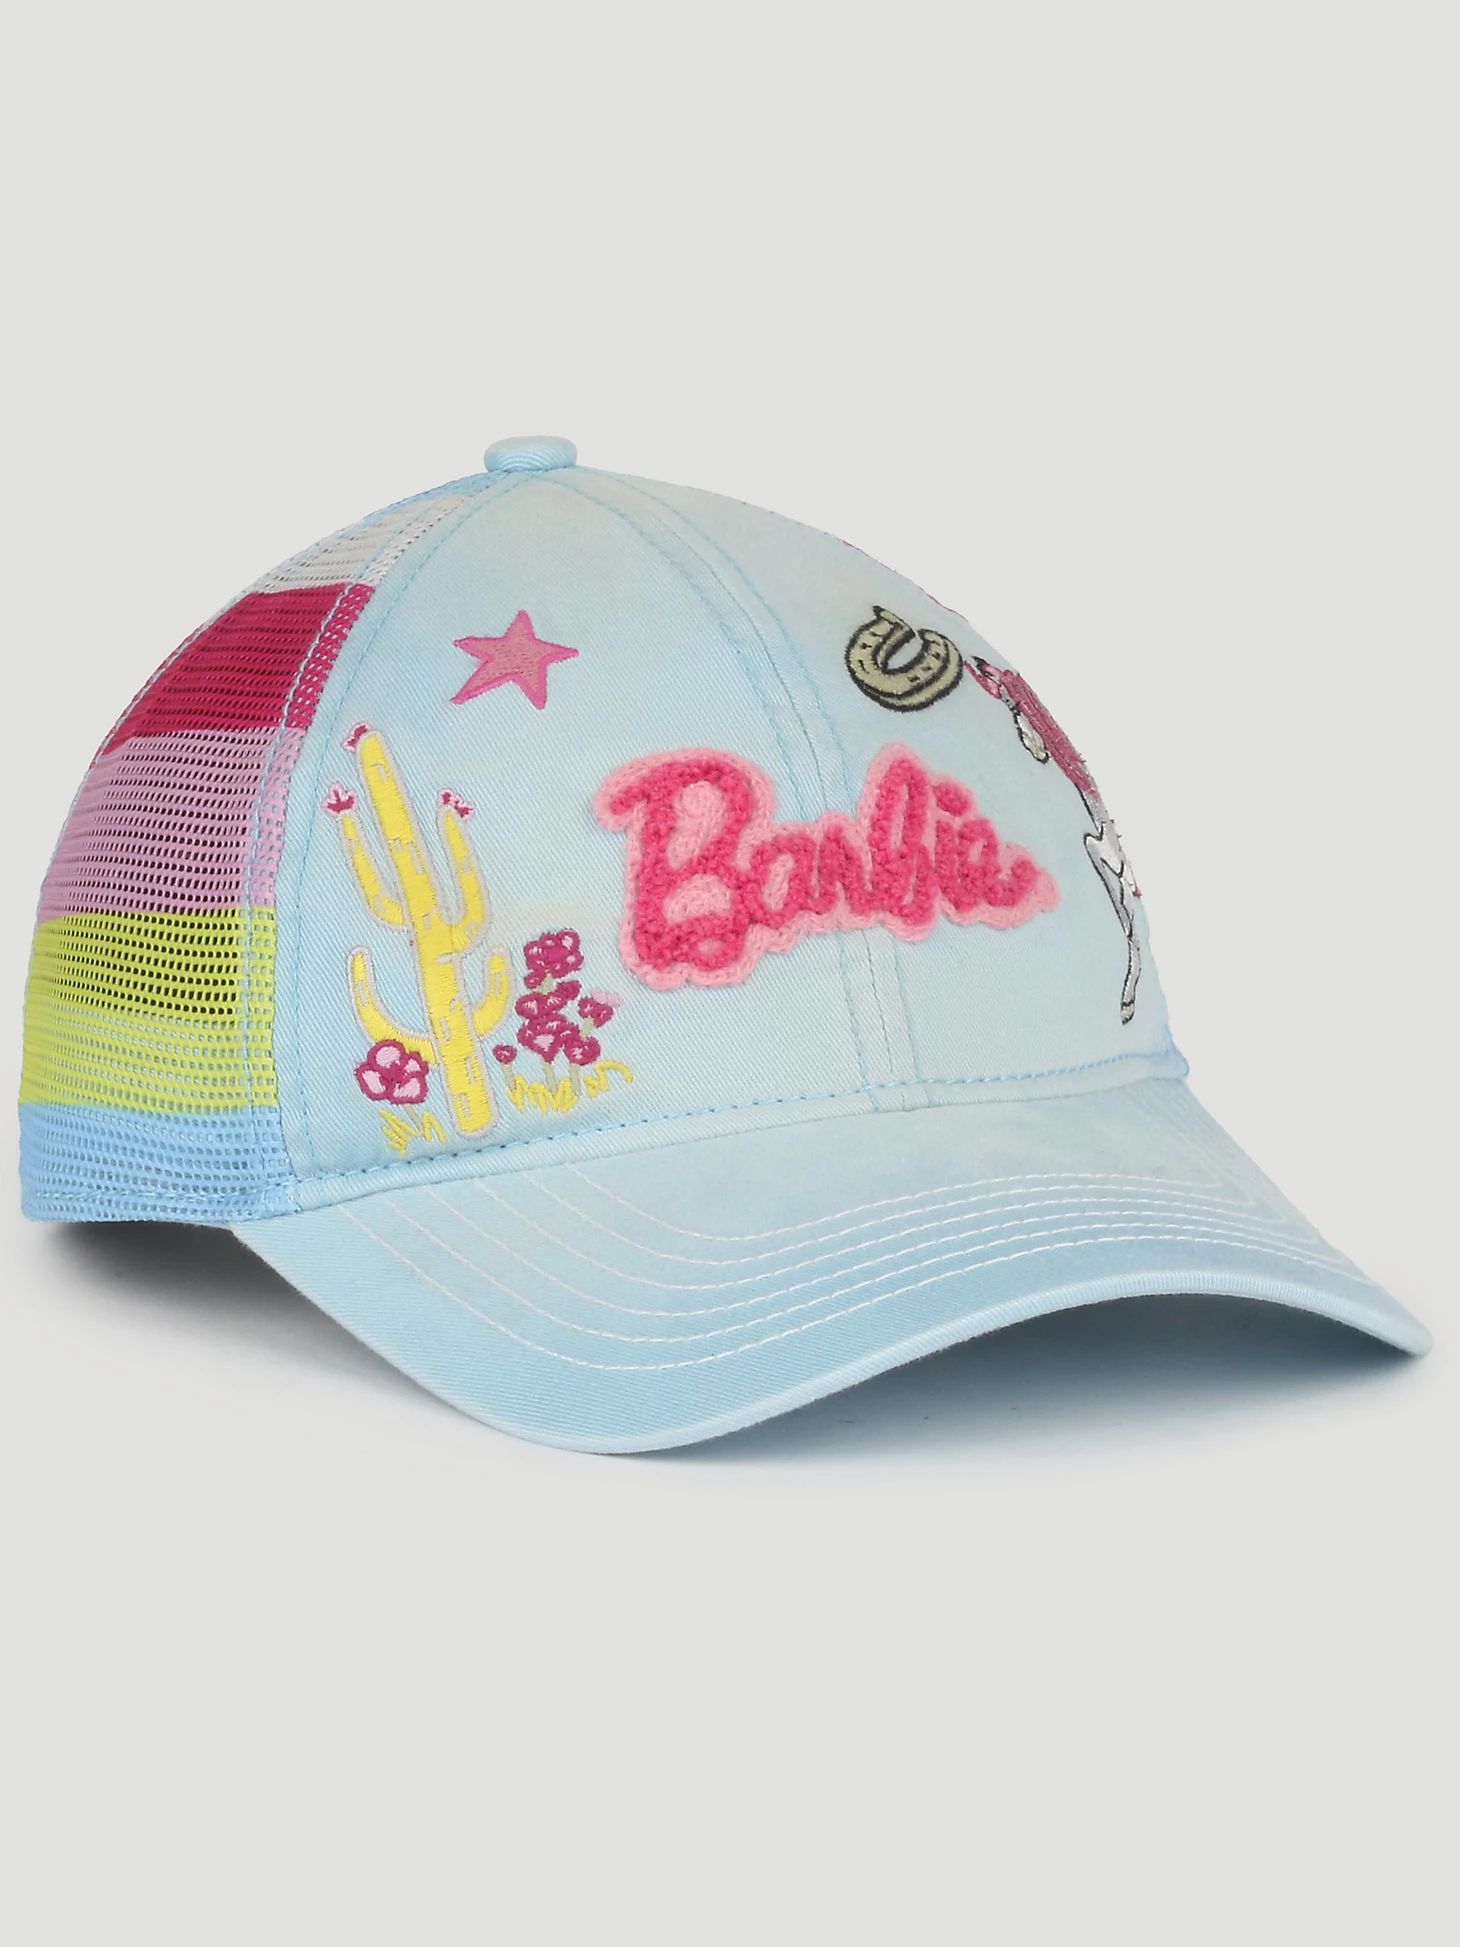 Wrangler x Barbie™ Girl's Embroidery Mesh Back Baseball Cap in Light Blue | Wrangler